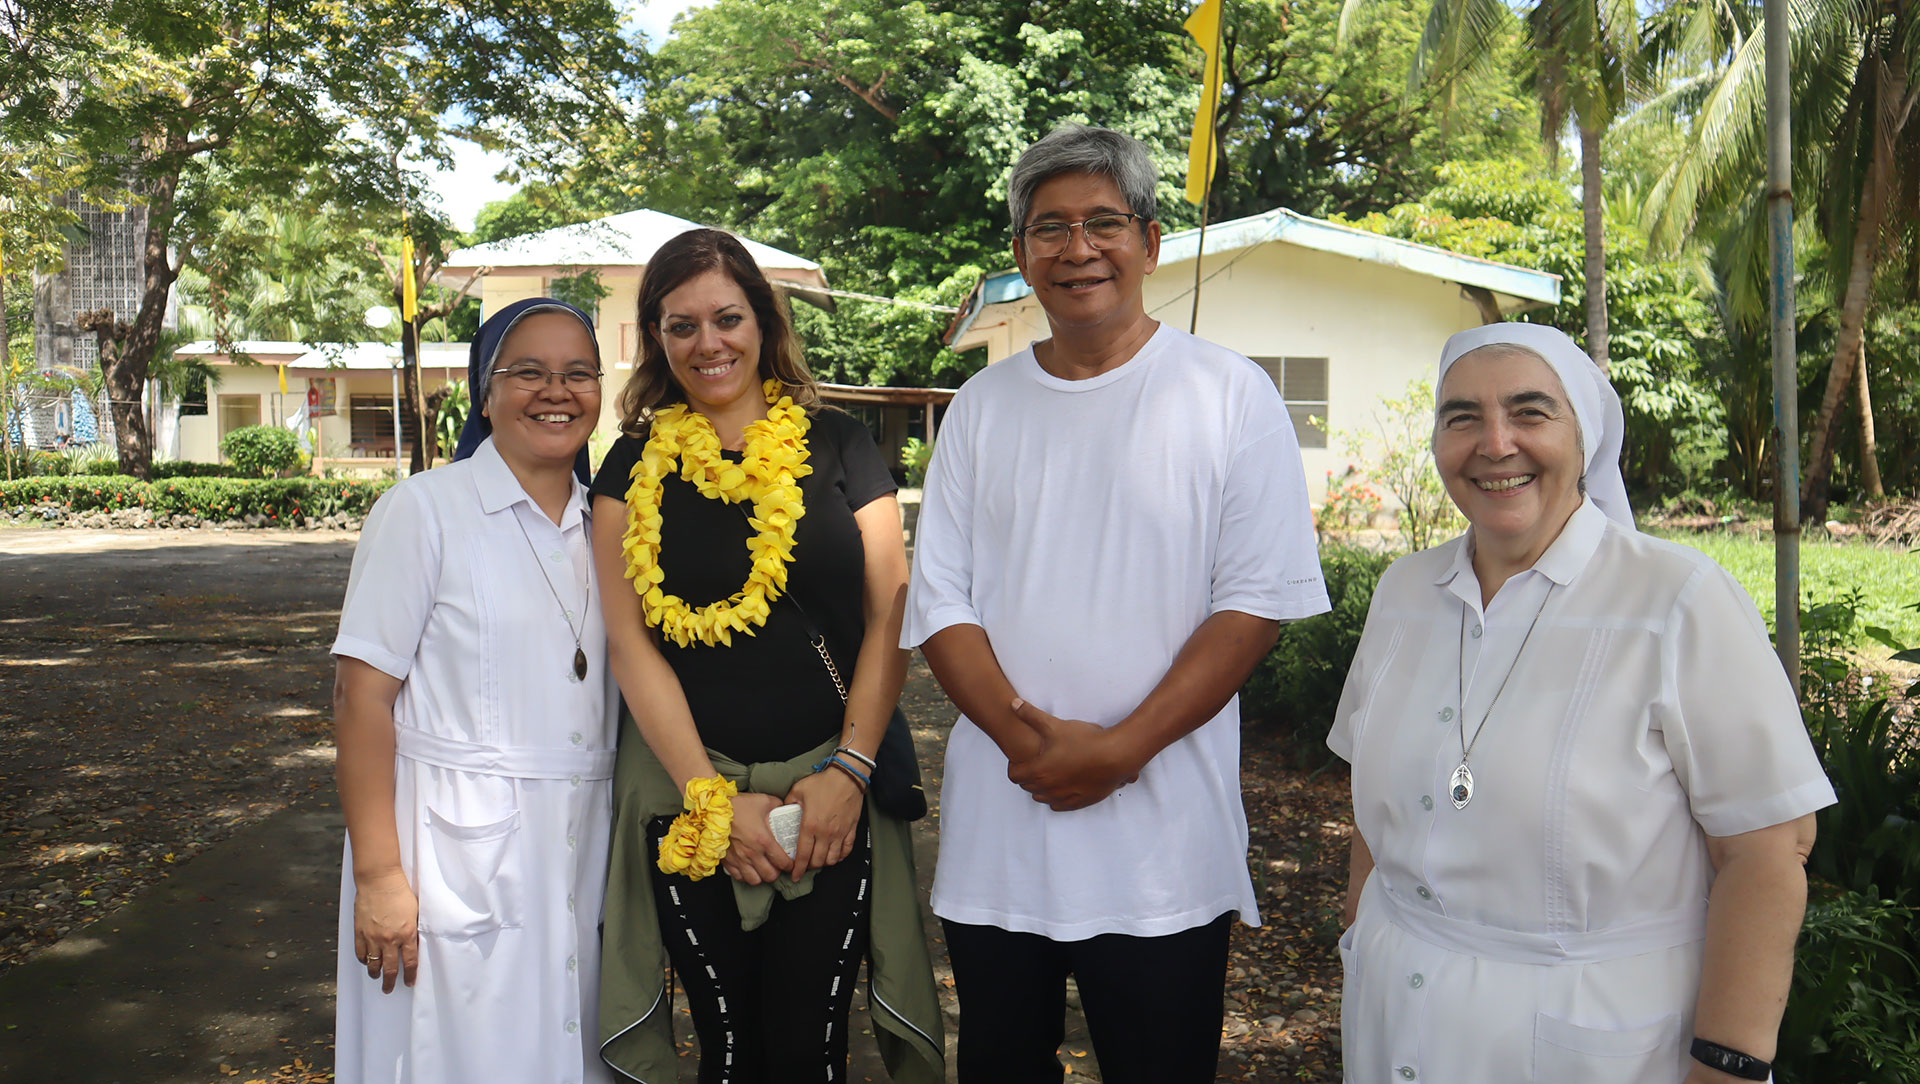 PM ASA, Rosalba Mirci, con Suor Aldine, Fr. Gerry della comunità di Santa Teresa e Suor Rosanna Favero, delegata Superiore di MSBS a Mindoro